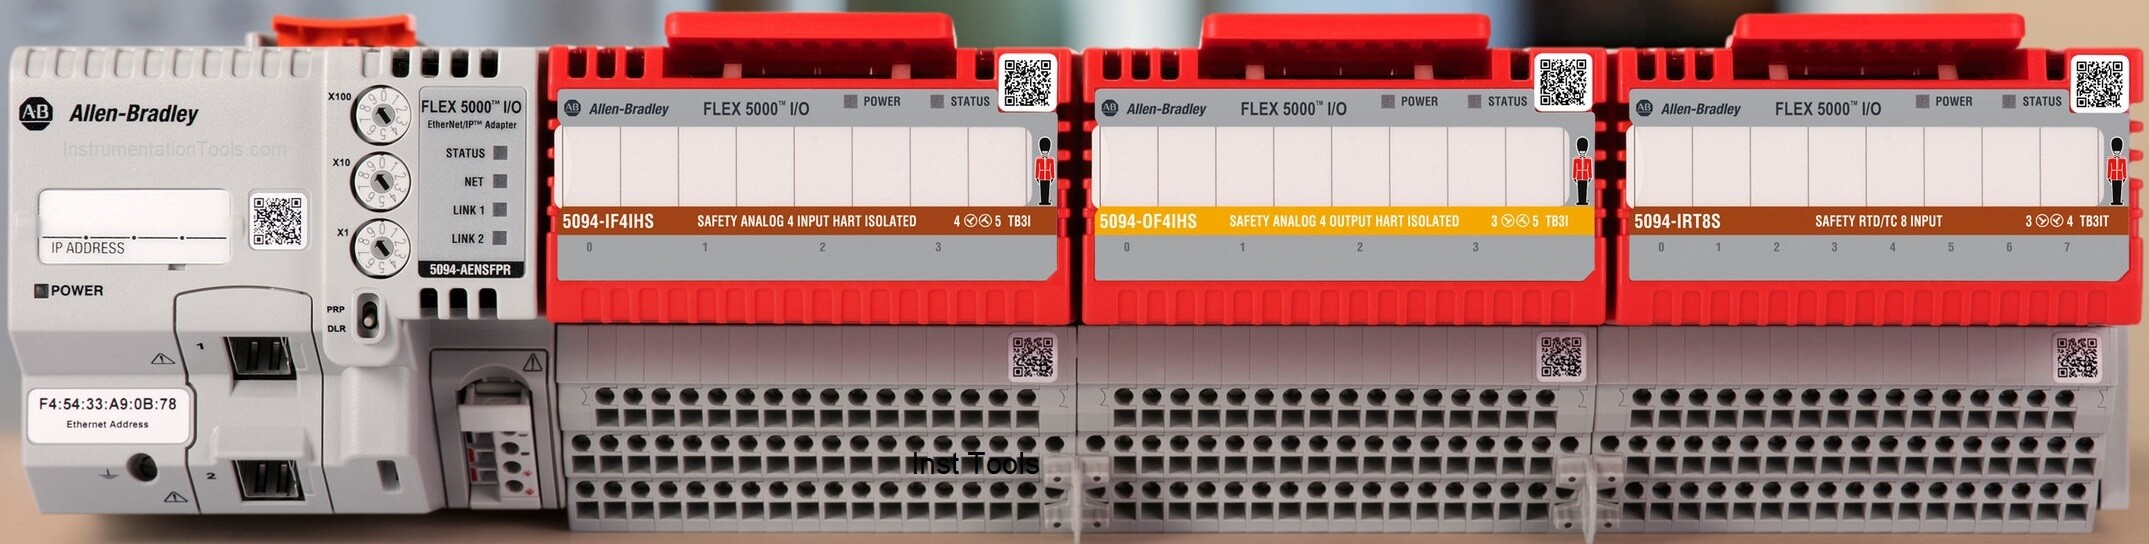 Allen-Bradley FLEX IO modules